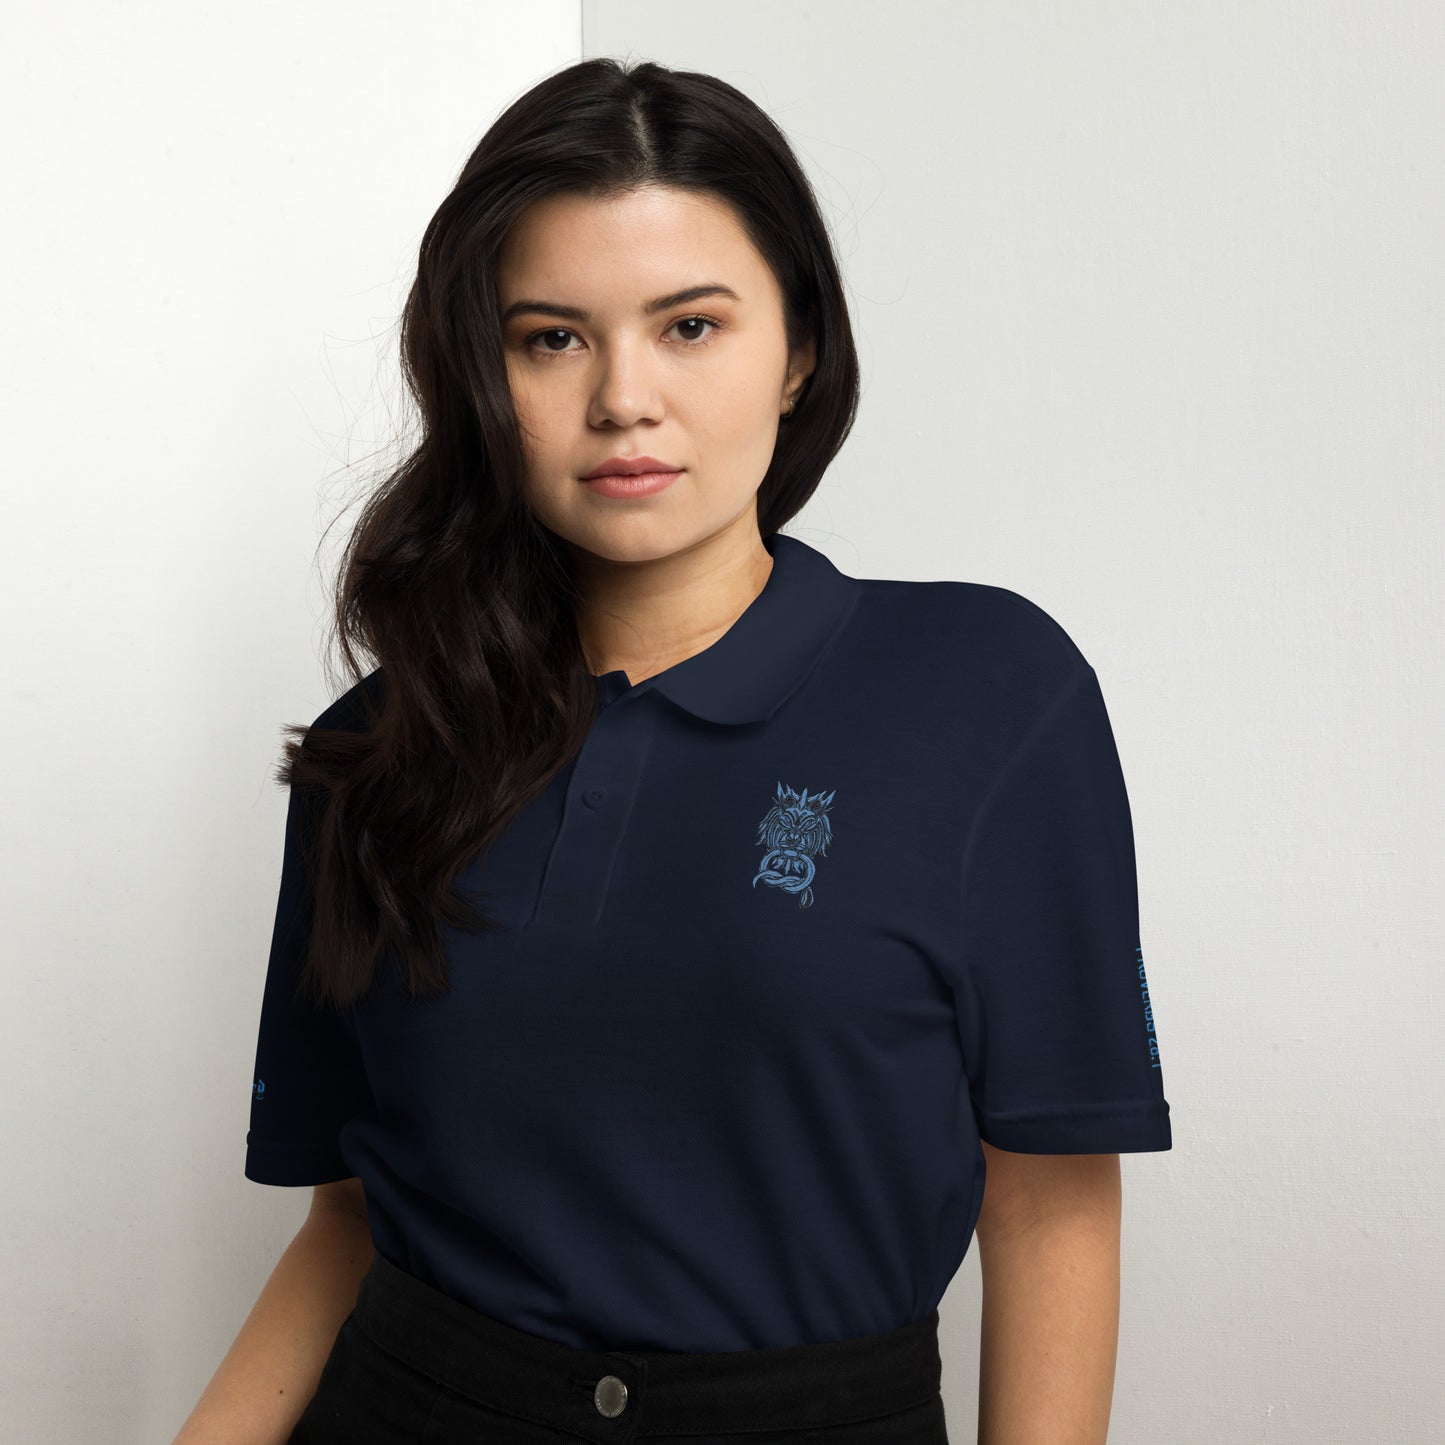 Bold as a Lion- Unisex pique polo shirt